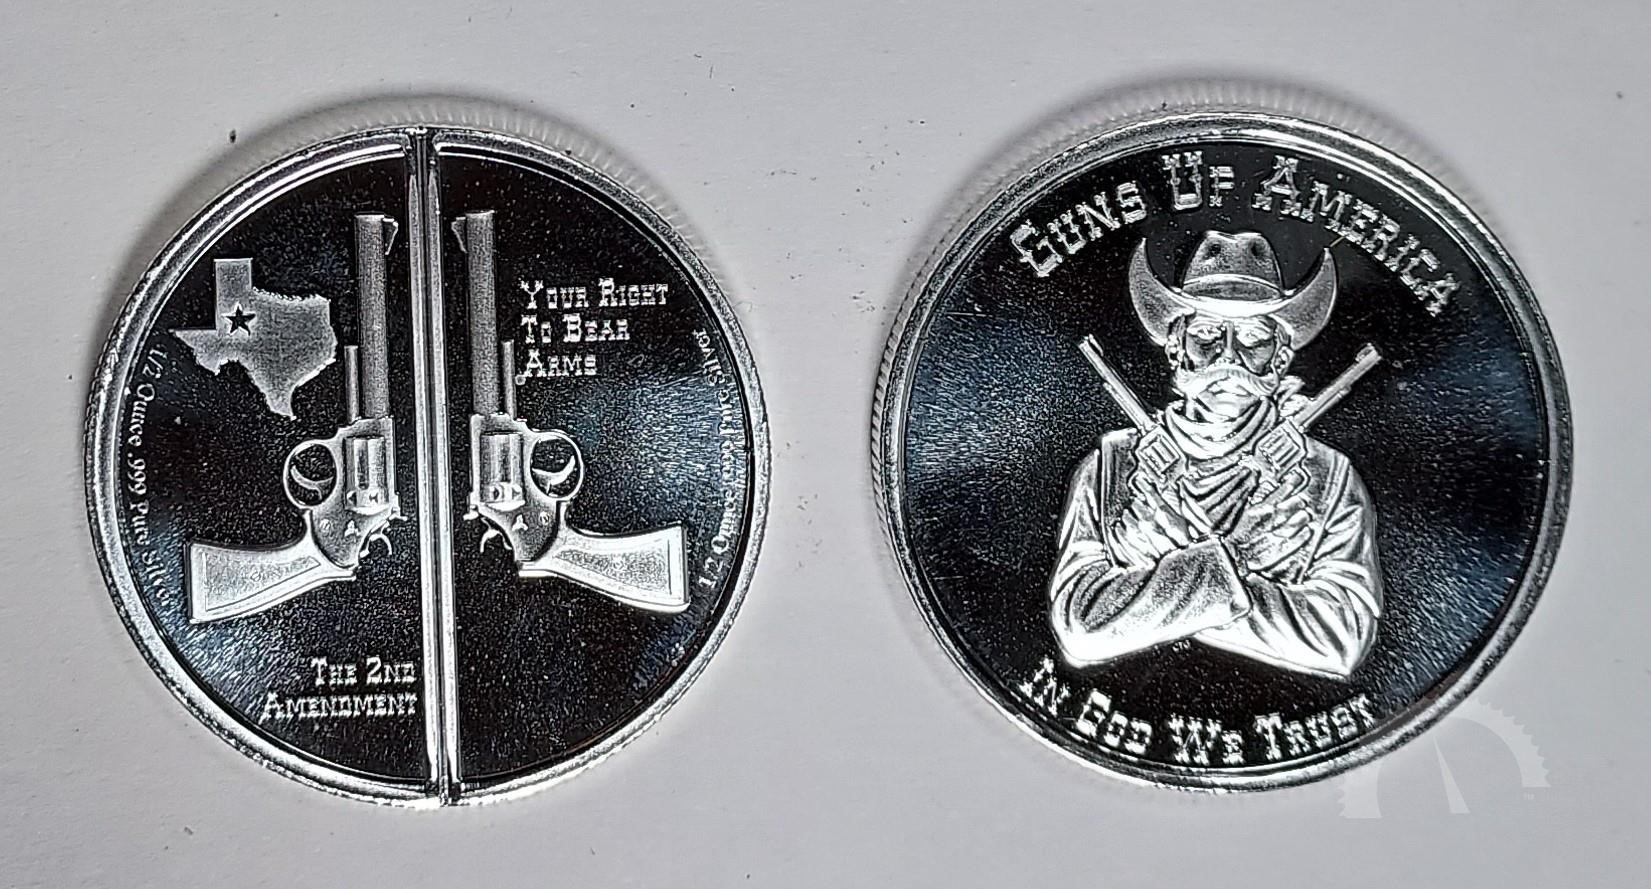 $2 1899 series George Washington 1 oz silver clad/.999 fine copper bullion bar 